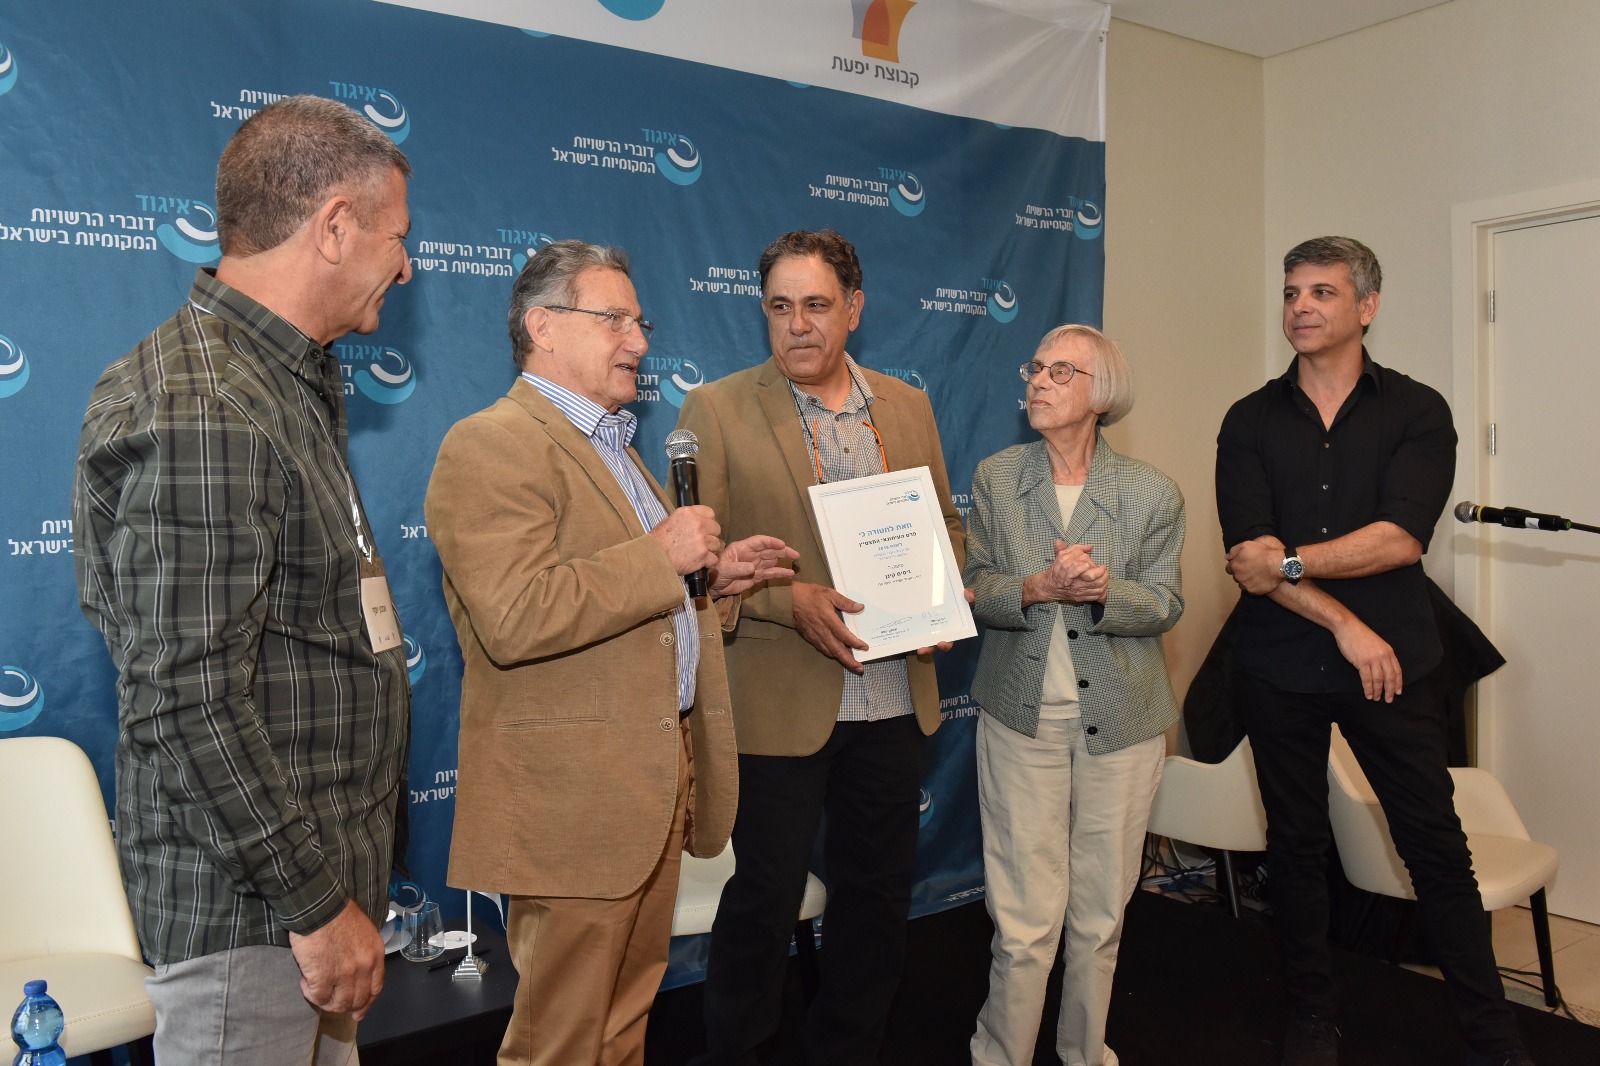 פרס העיתונאי המצטיין בישראל הוענק לניסים קינן, כתב ומגיש כאן- תאגיד השידור הציבורי